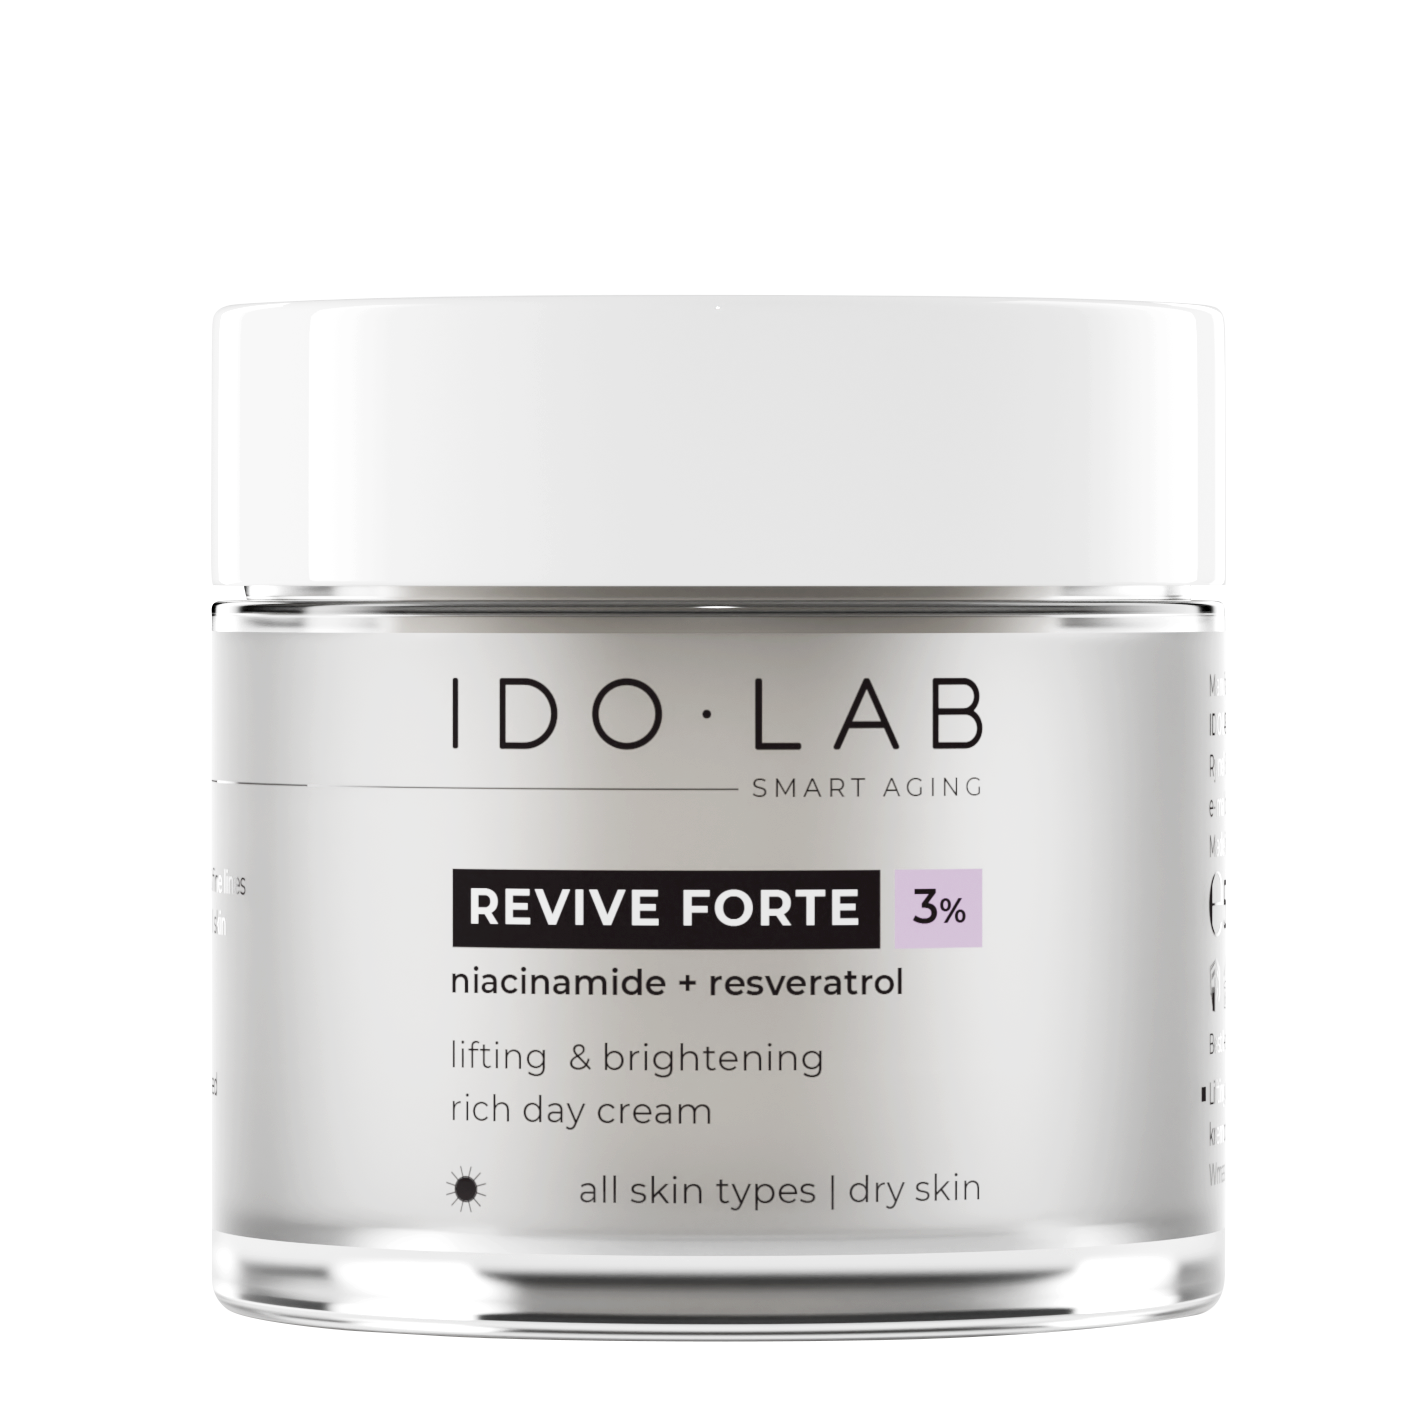 Дневной лифтинг-осветляющий крем для лица Ido Lab Revive Forte, 50 мл